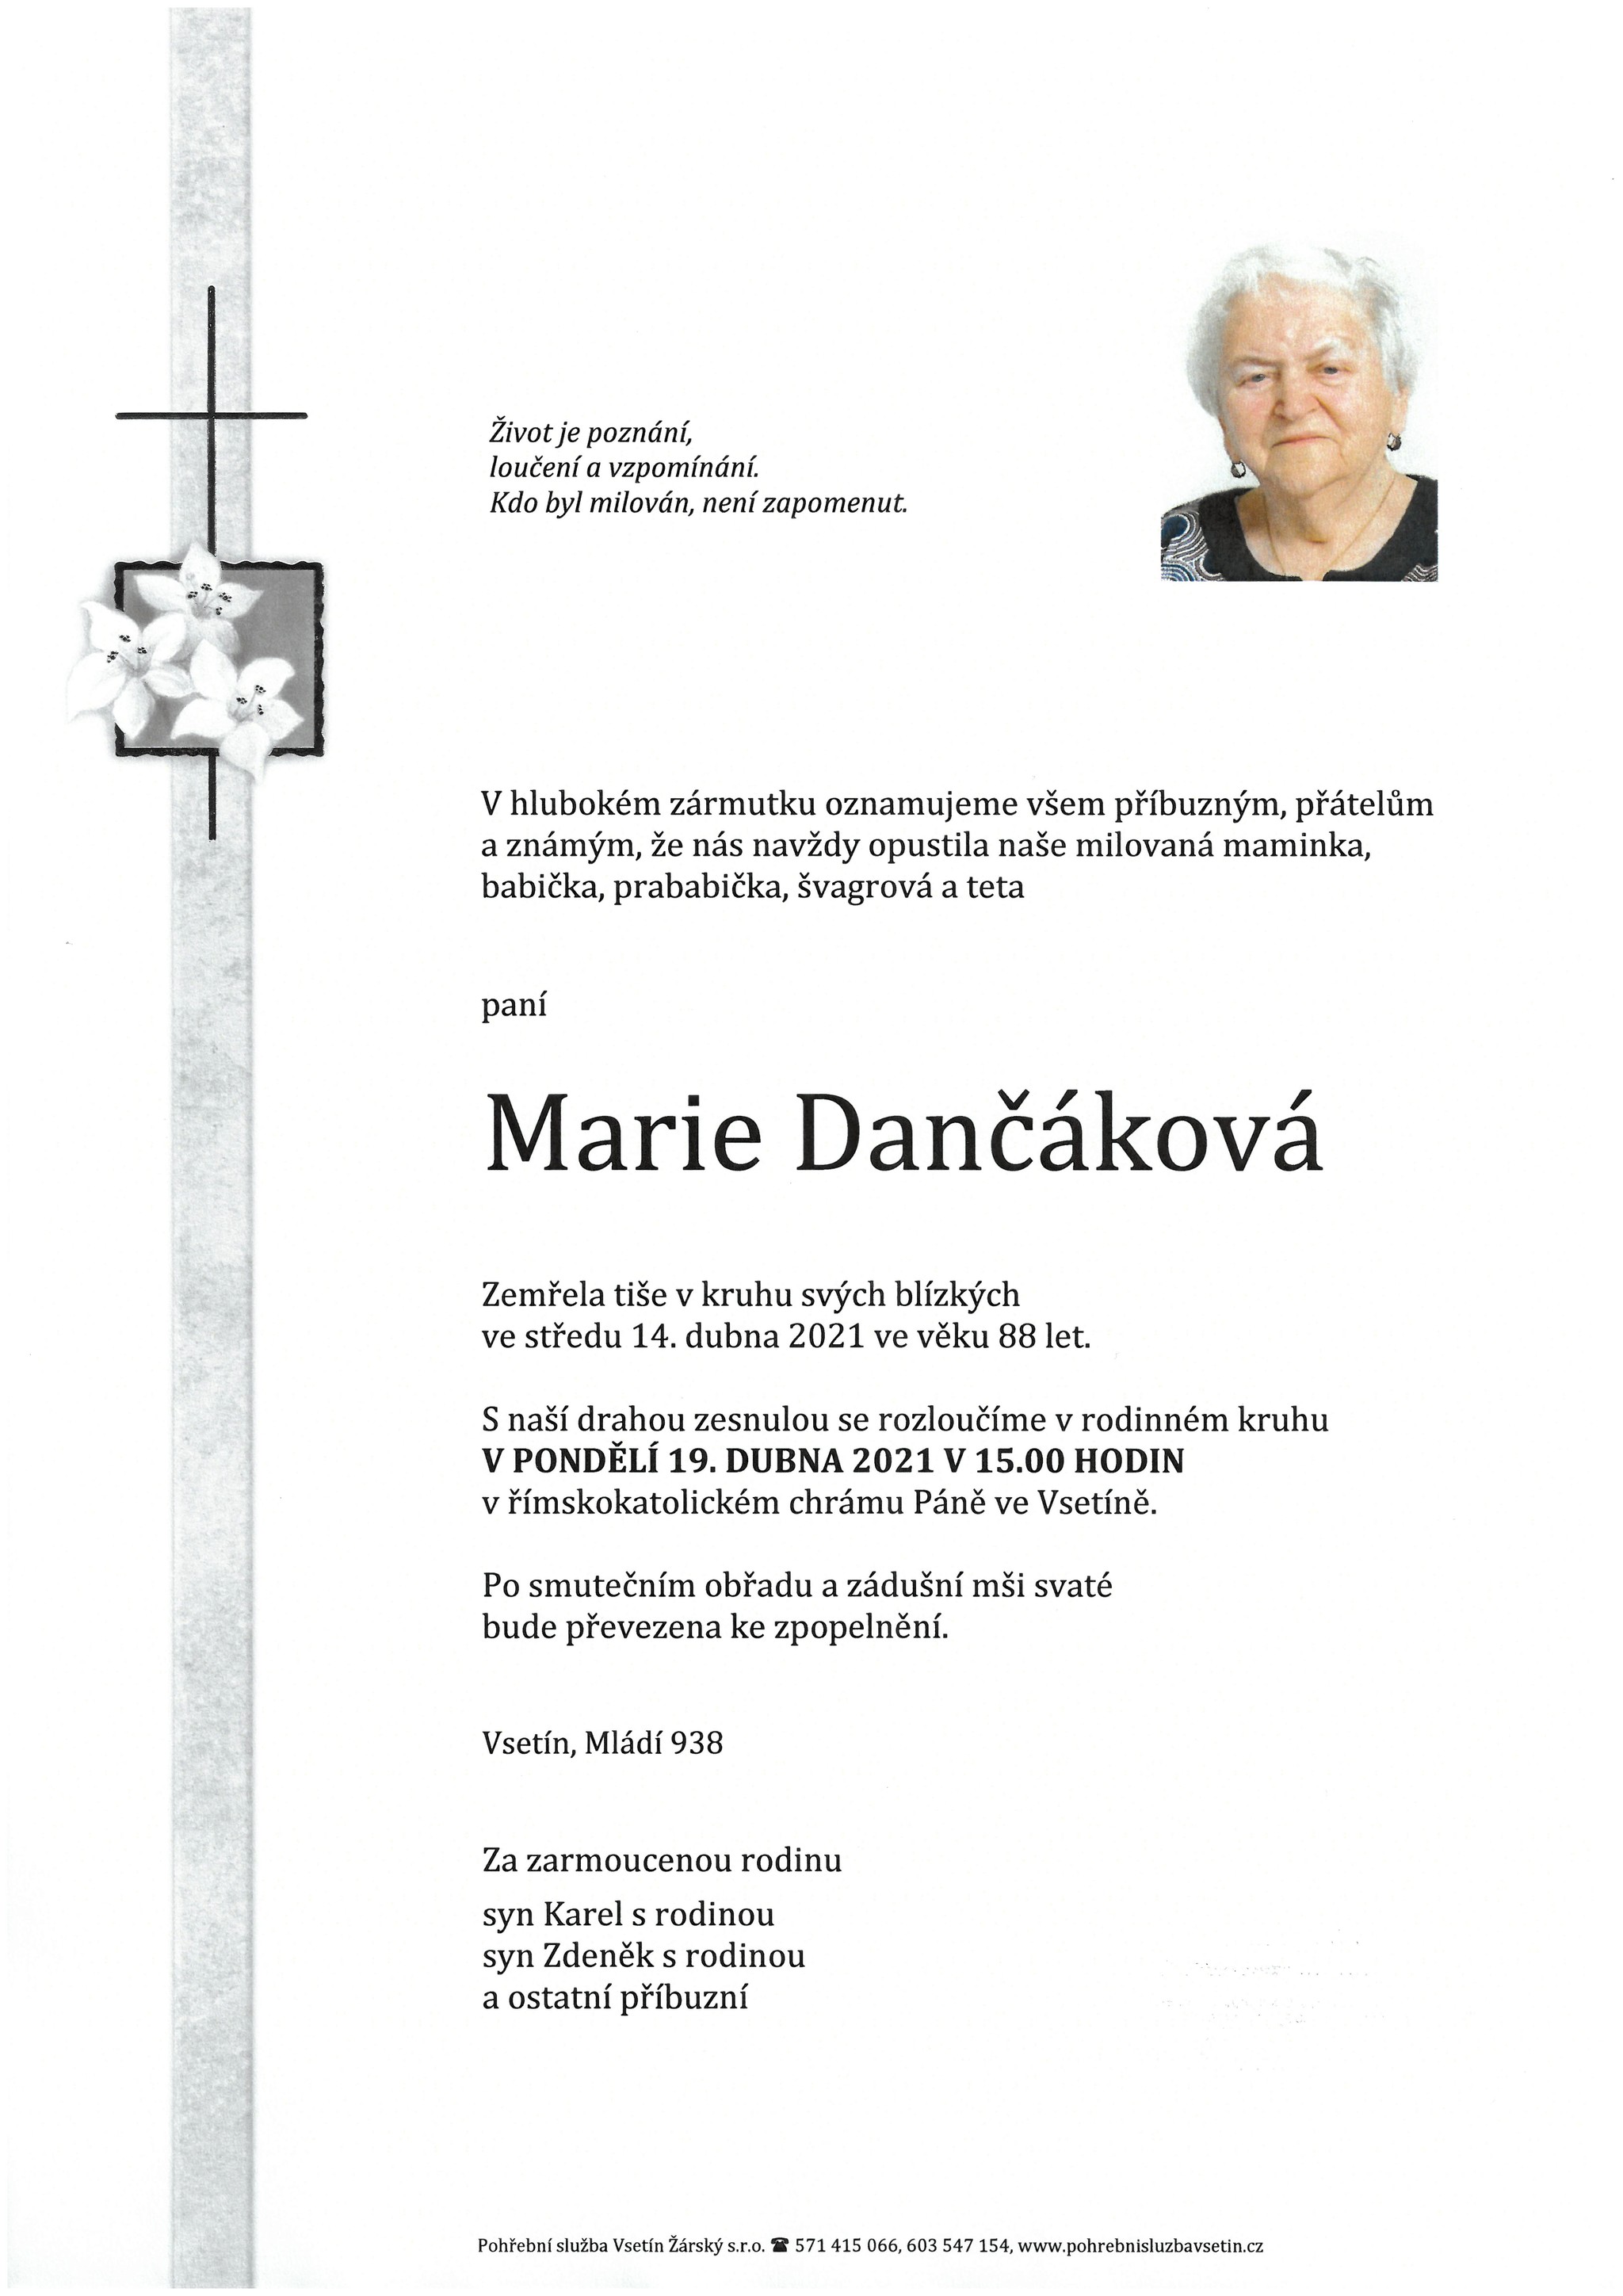 Marie Dančáková